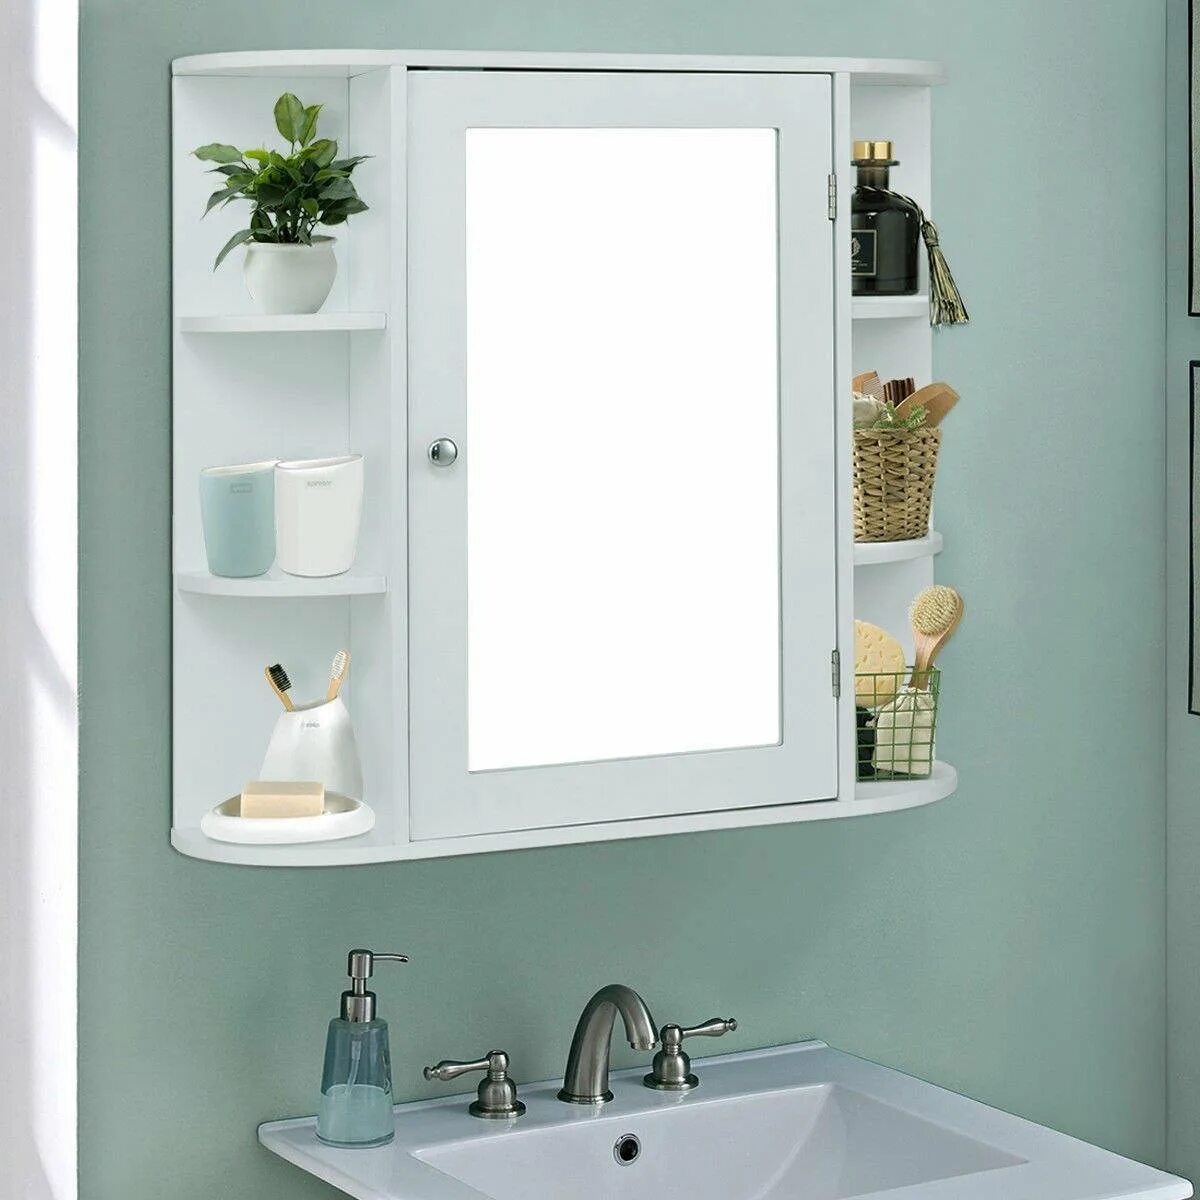 Купить полку для ванны с зеркалом. Зеркало в ванную с полкой. Зеркало в ванную с полочкой. Зеркало с полками в ванную комнату. Зеркало в ванную с полоской.